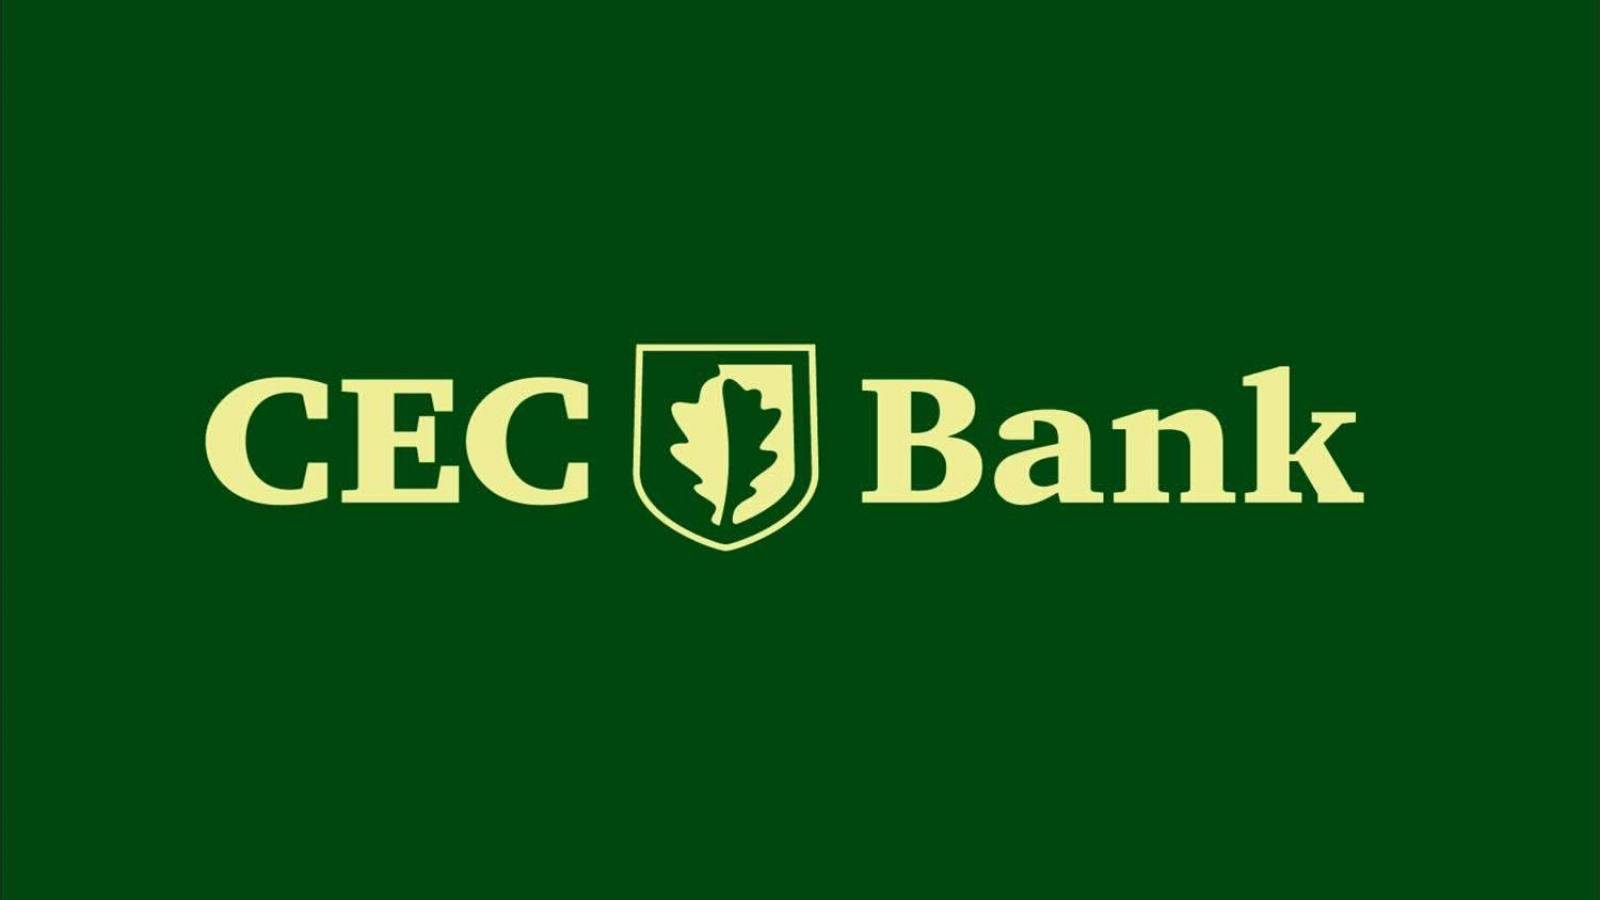 Ostrzeżenie Autoryzacja banku CEC